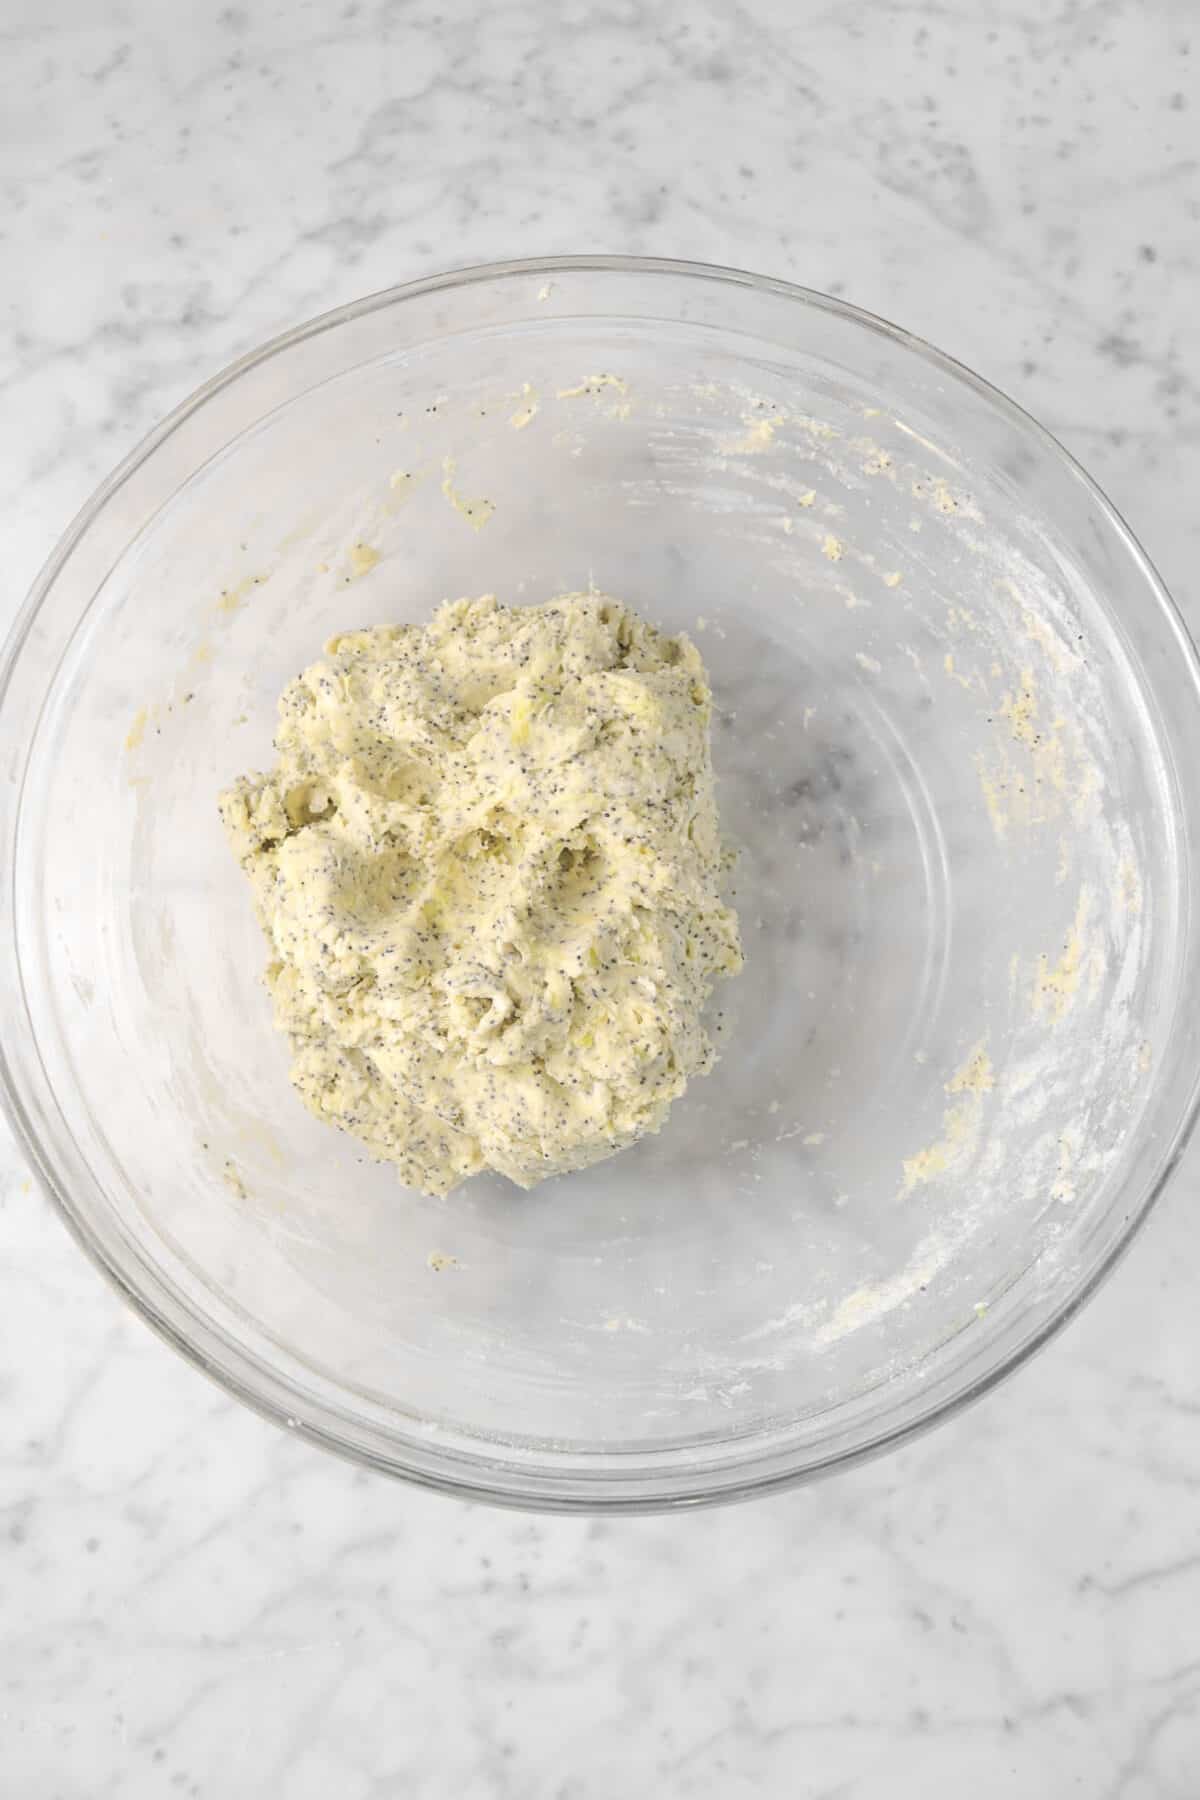 scone dough in a glass bowl